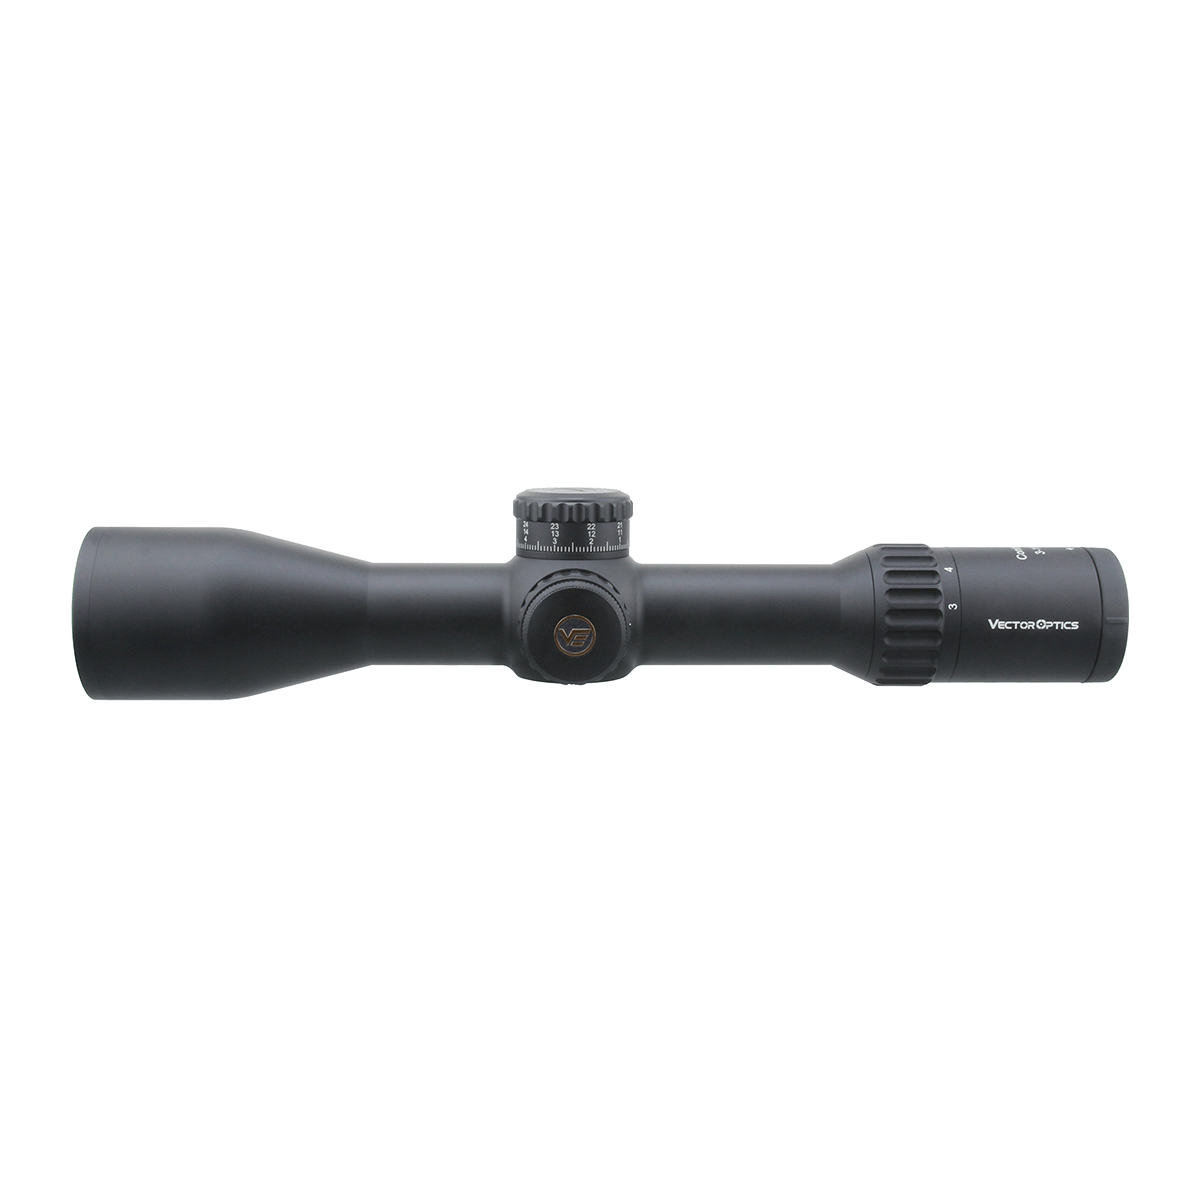 34mm Continental x6 3-18x50 VCT FFP Riflescope